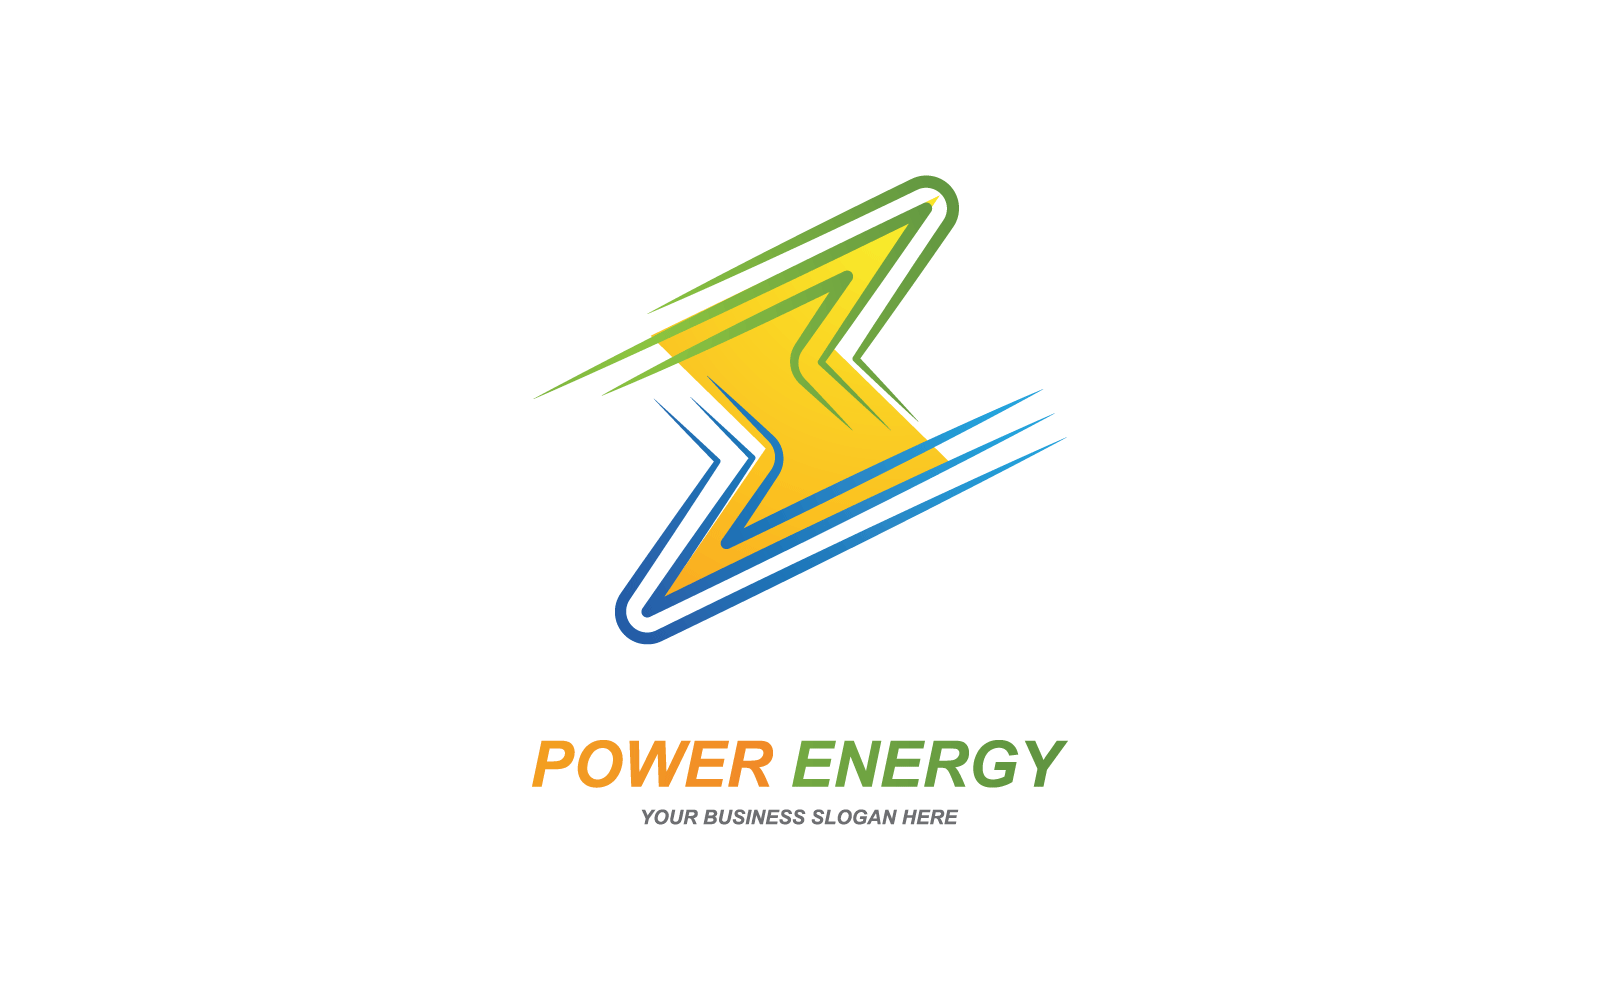 Power lightning power energy logo vector template